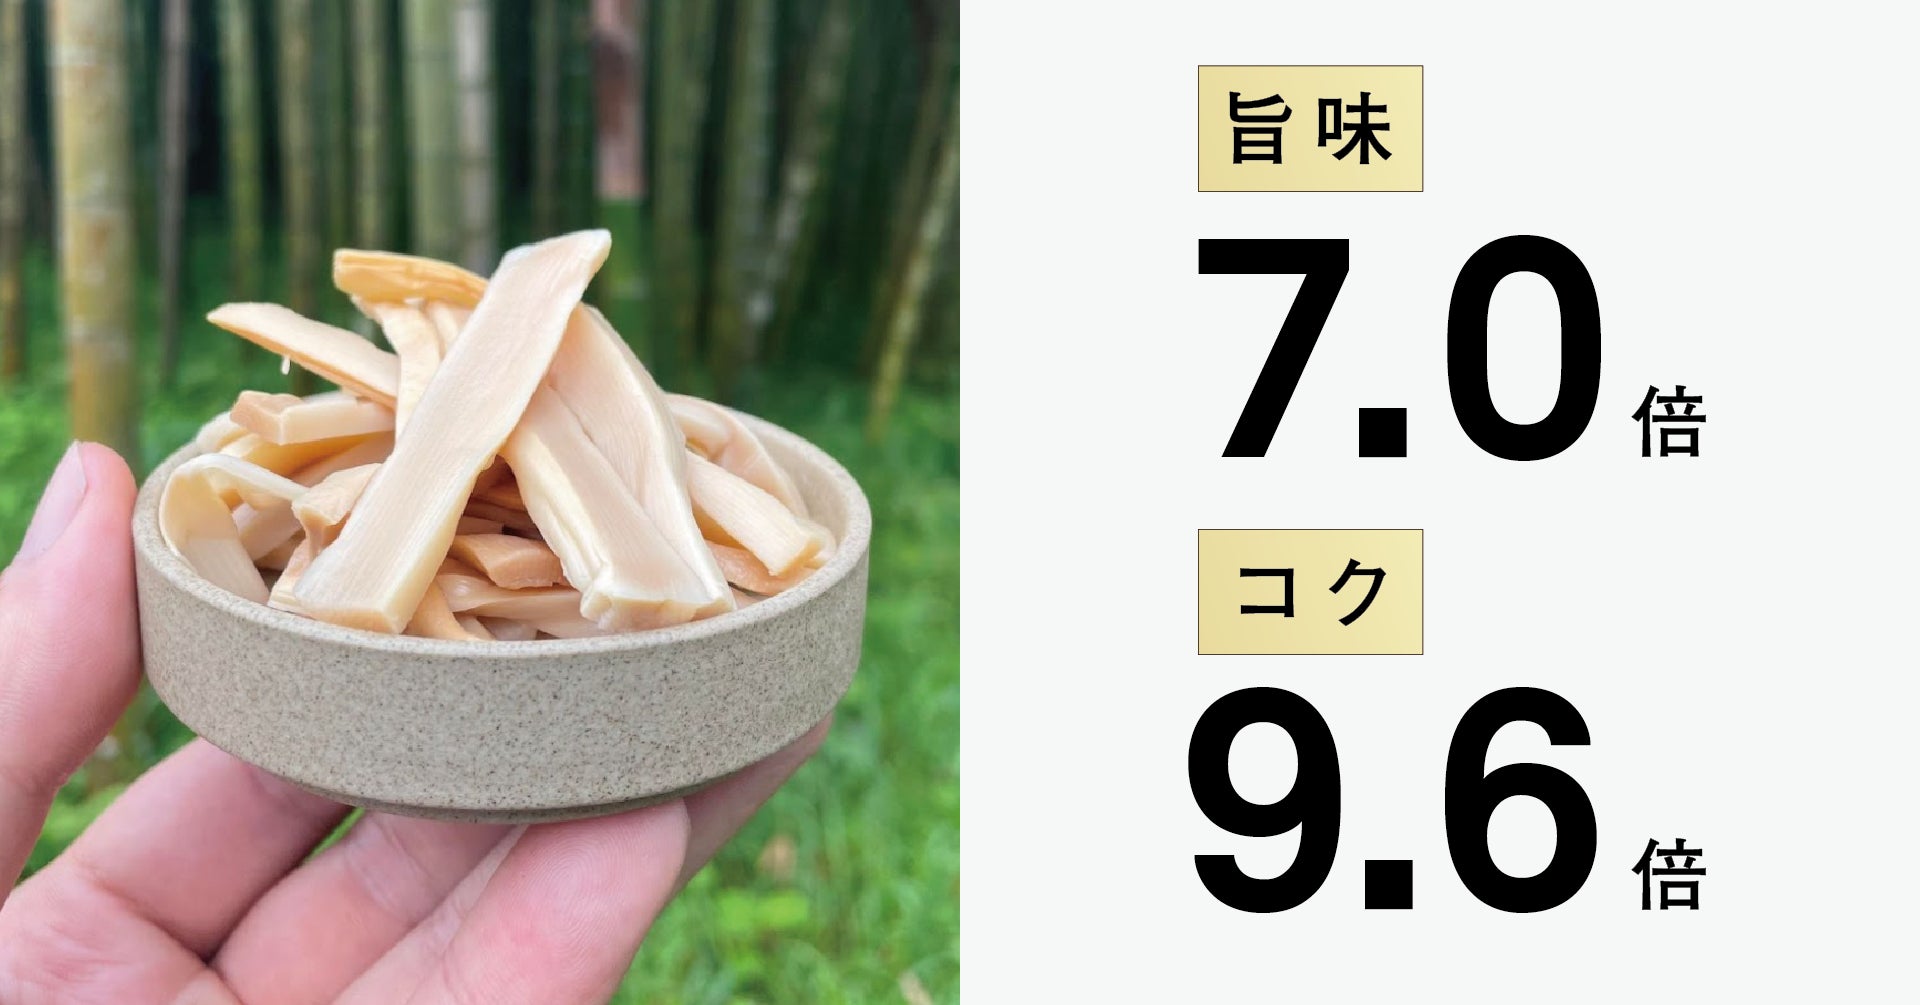 “孟宗竹”が原料の国産メンマは旨味7.0倍・コク9.6倍！麻竹を使用する海外産メンマと比較した成分分析を実施